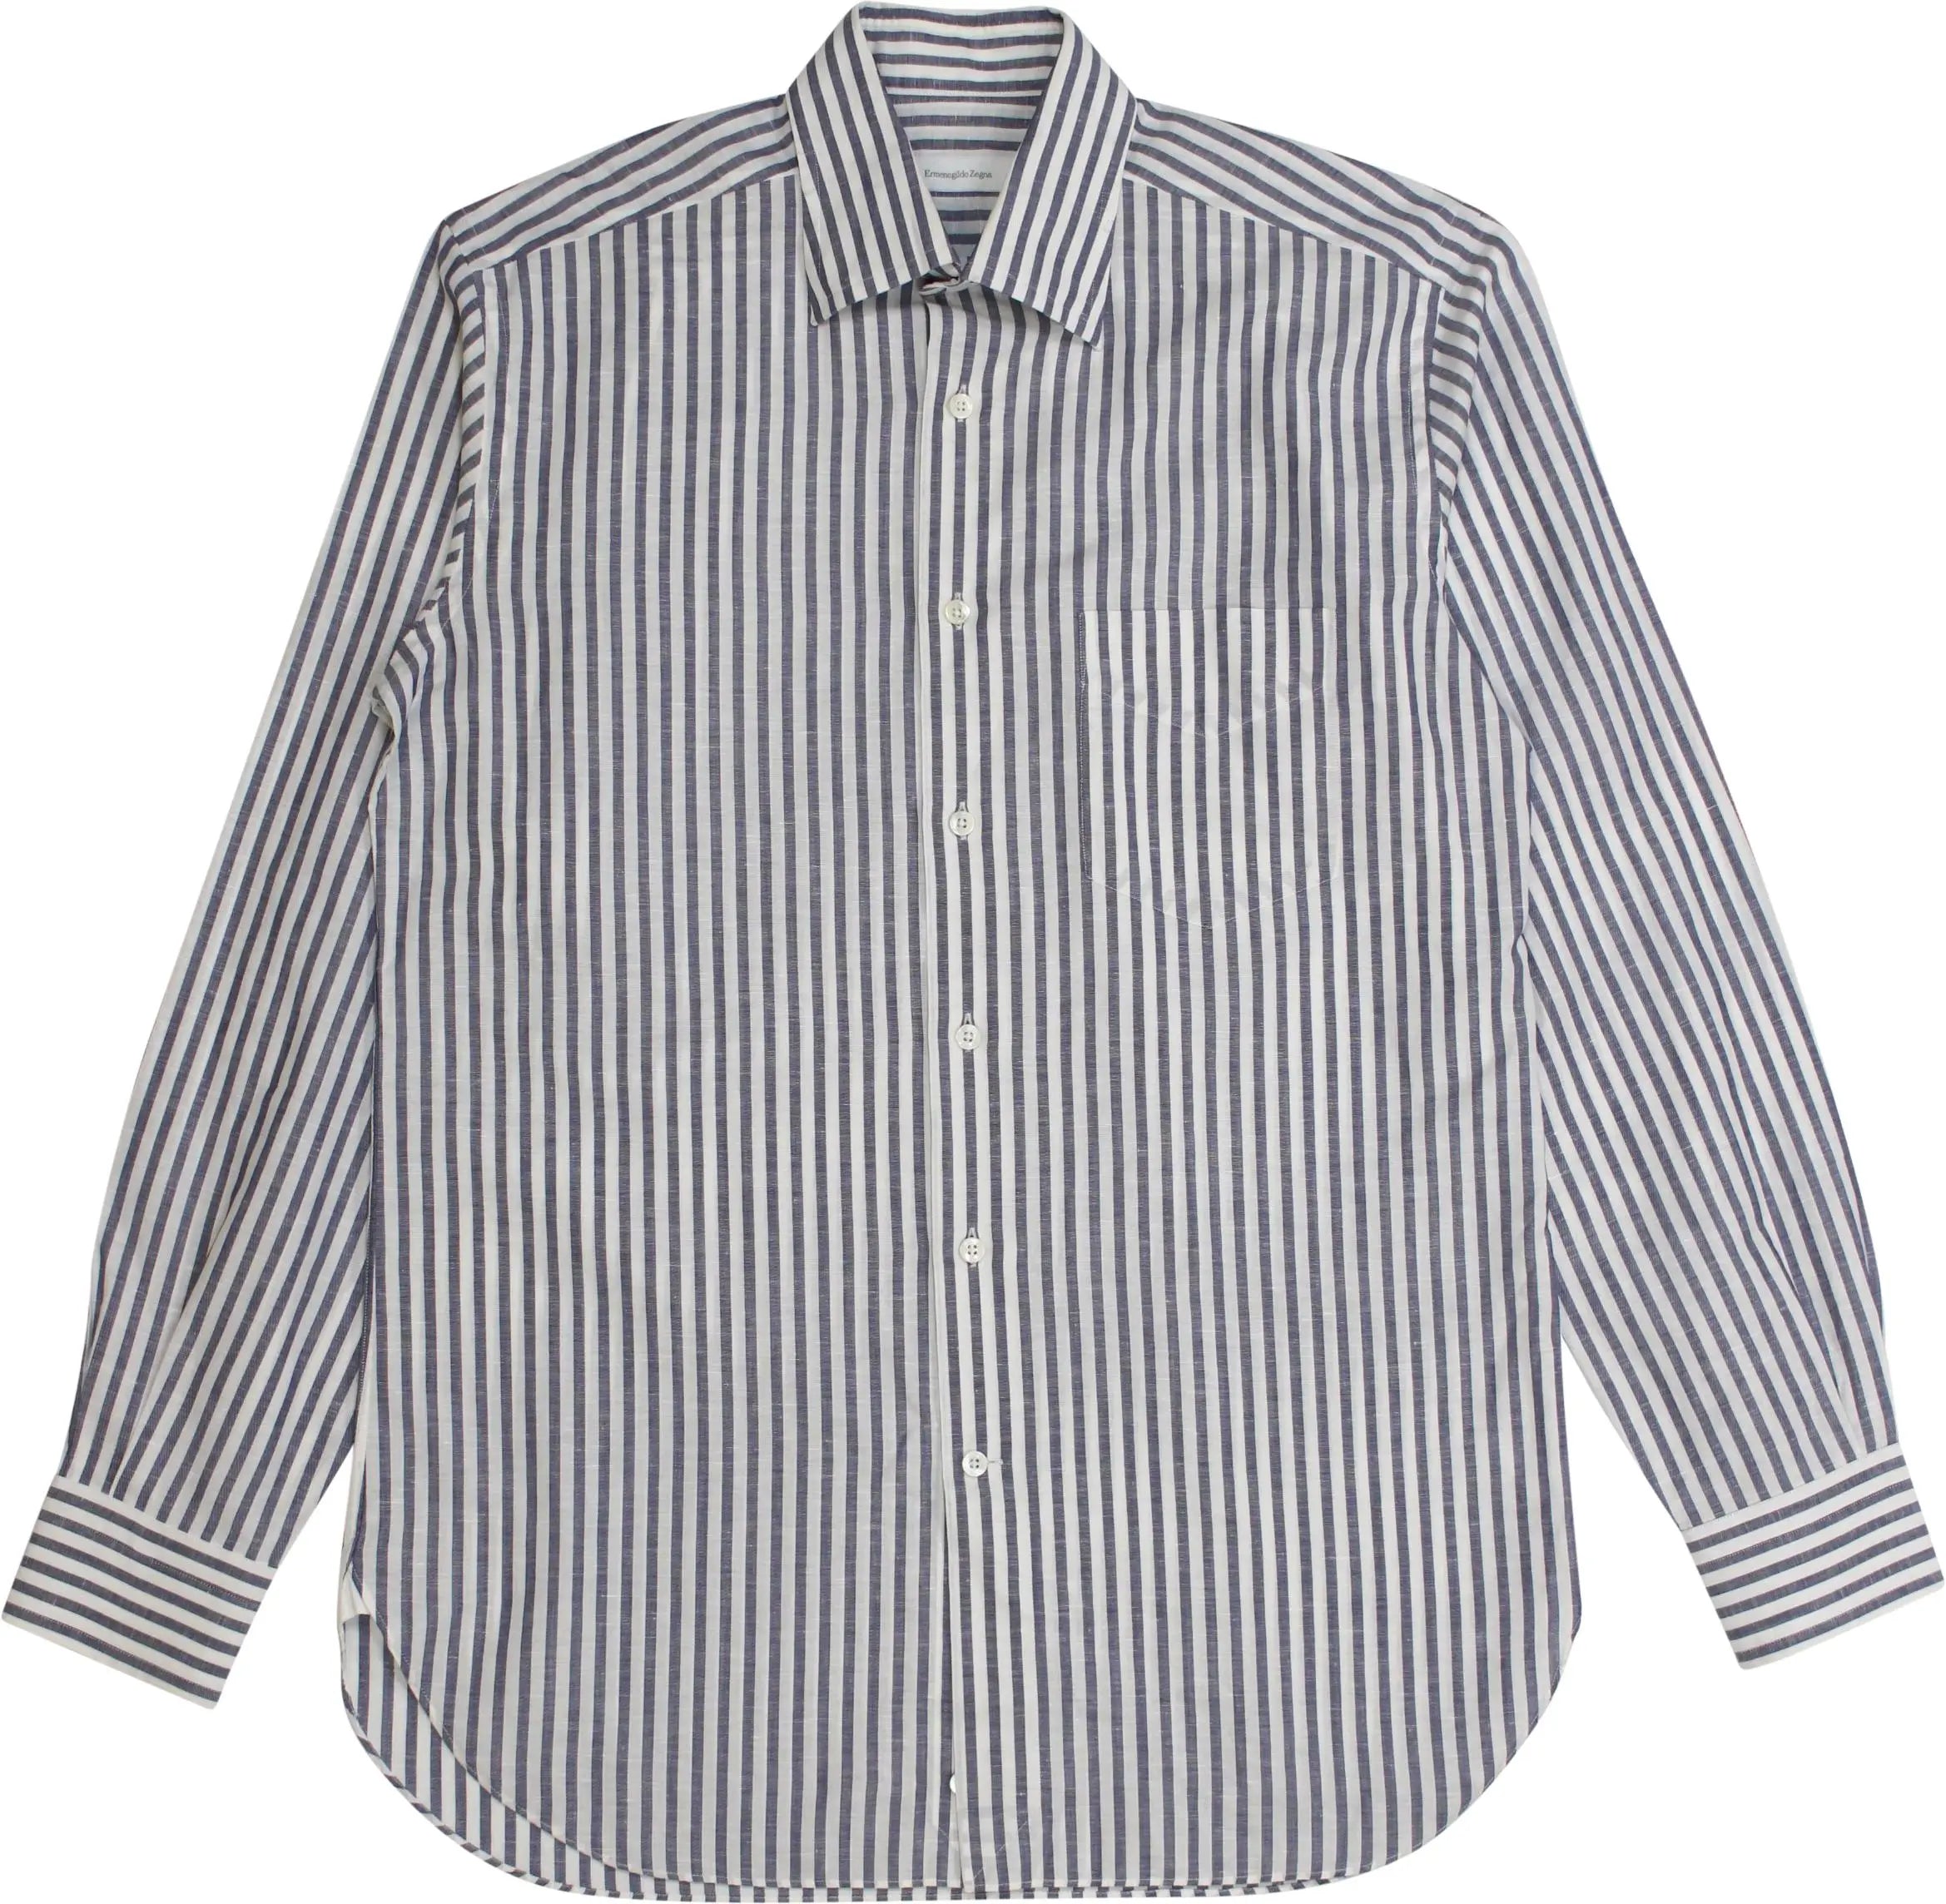 Ermenegildo Zegna - Striped Linen Shirt by Ermenegildo Zegna- ThriftTale.com - Vintage and second handclothing